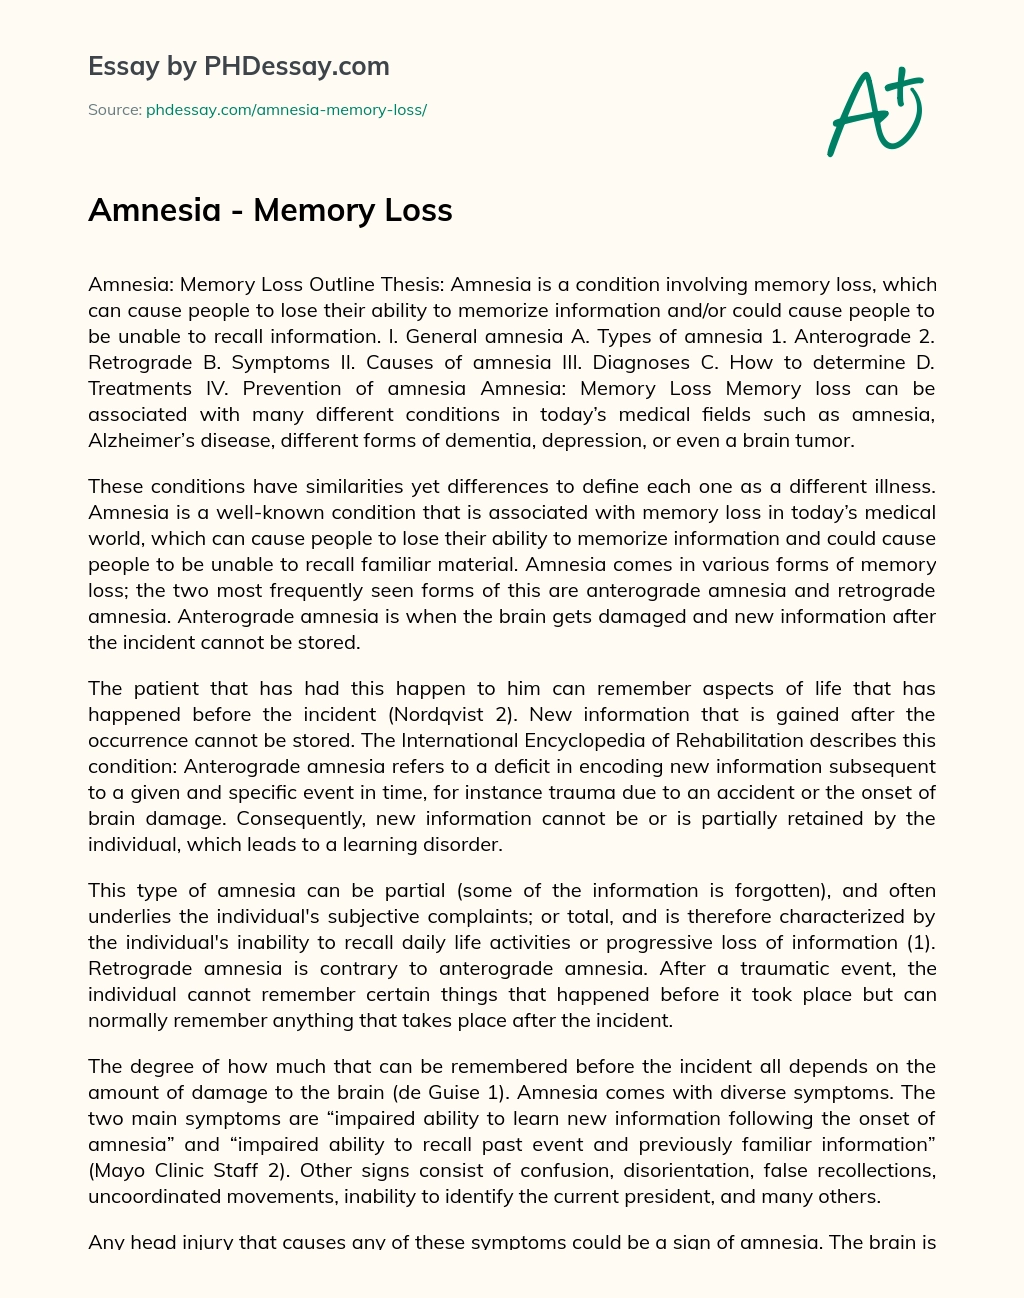 Amnesia – Memory Loss essay